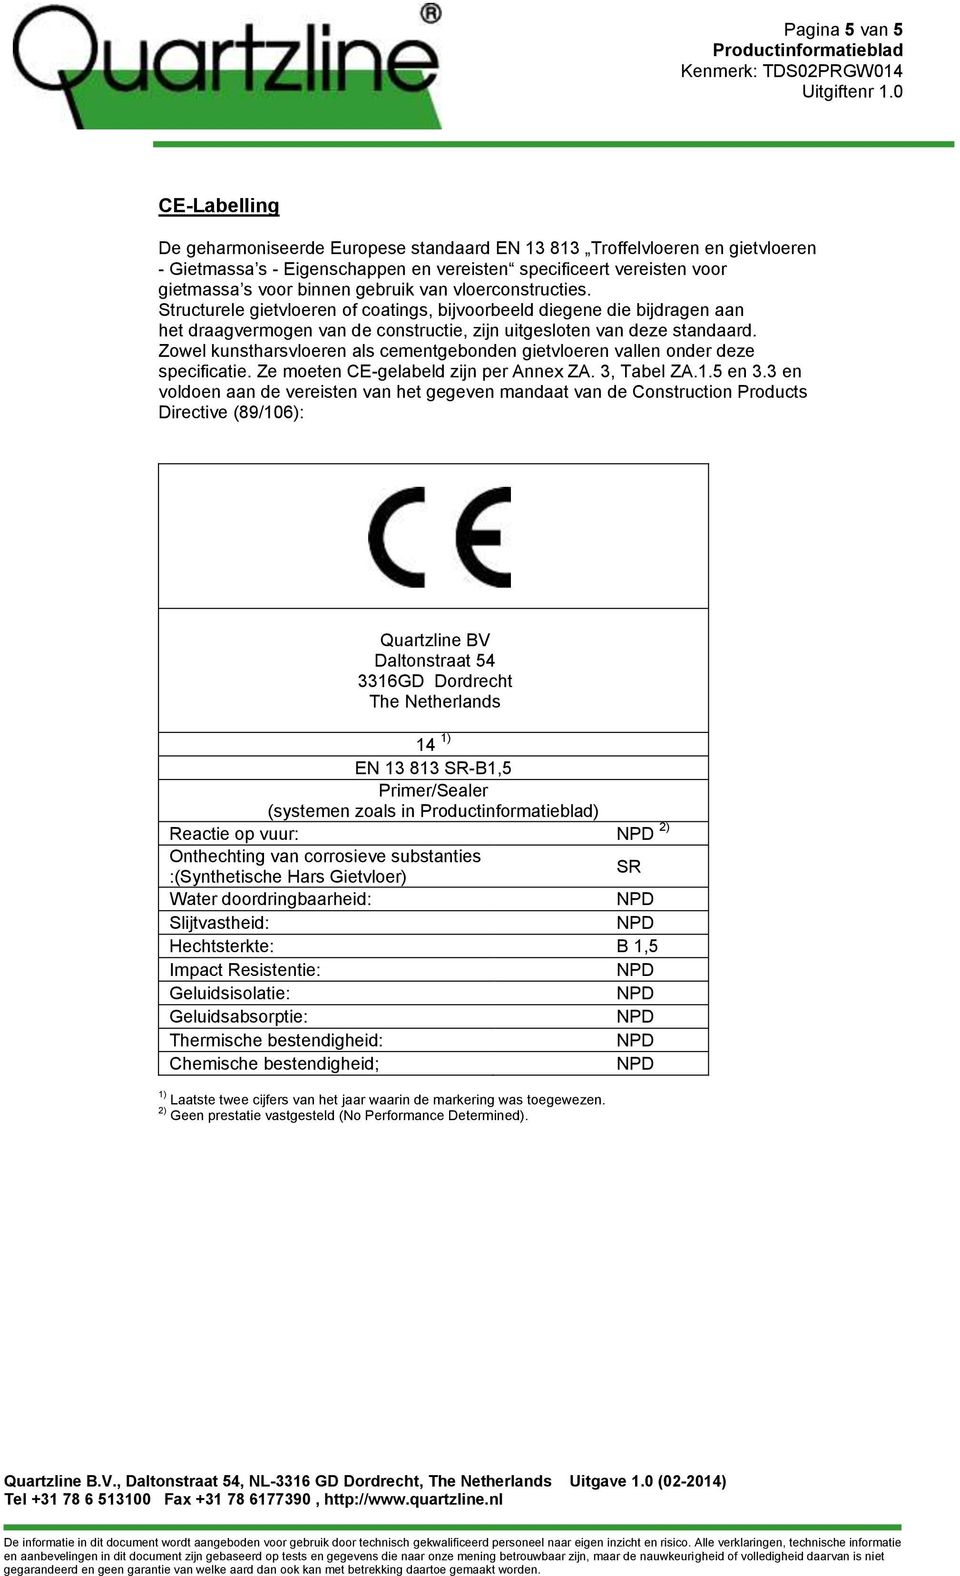 Zowel kunstharsvloeren als cementgebonden gietvloeren vallen onder deze specificatie. Ze moeten CE-gelabeld zijn per Annex ZA. 3, Tabel ZA.1.5 en 3.